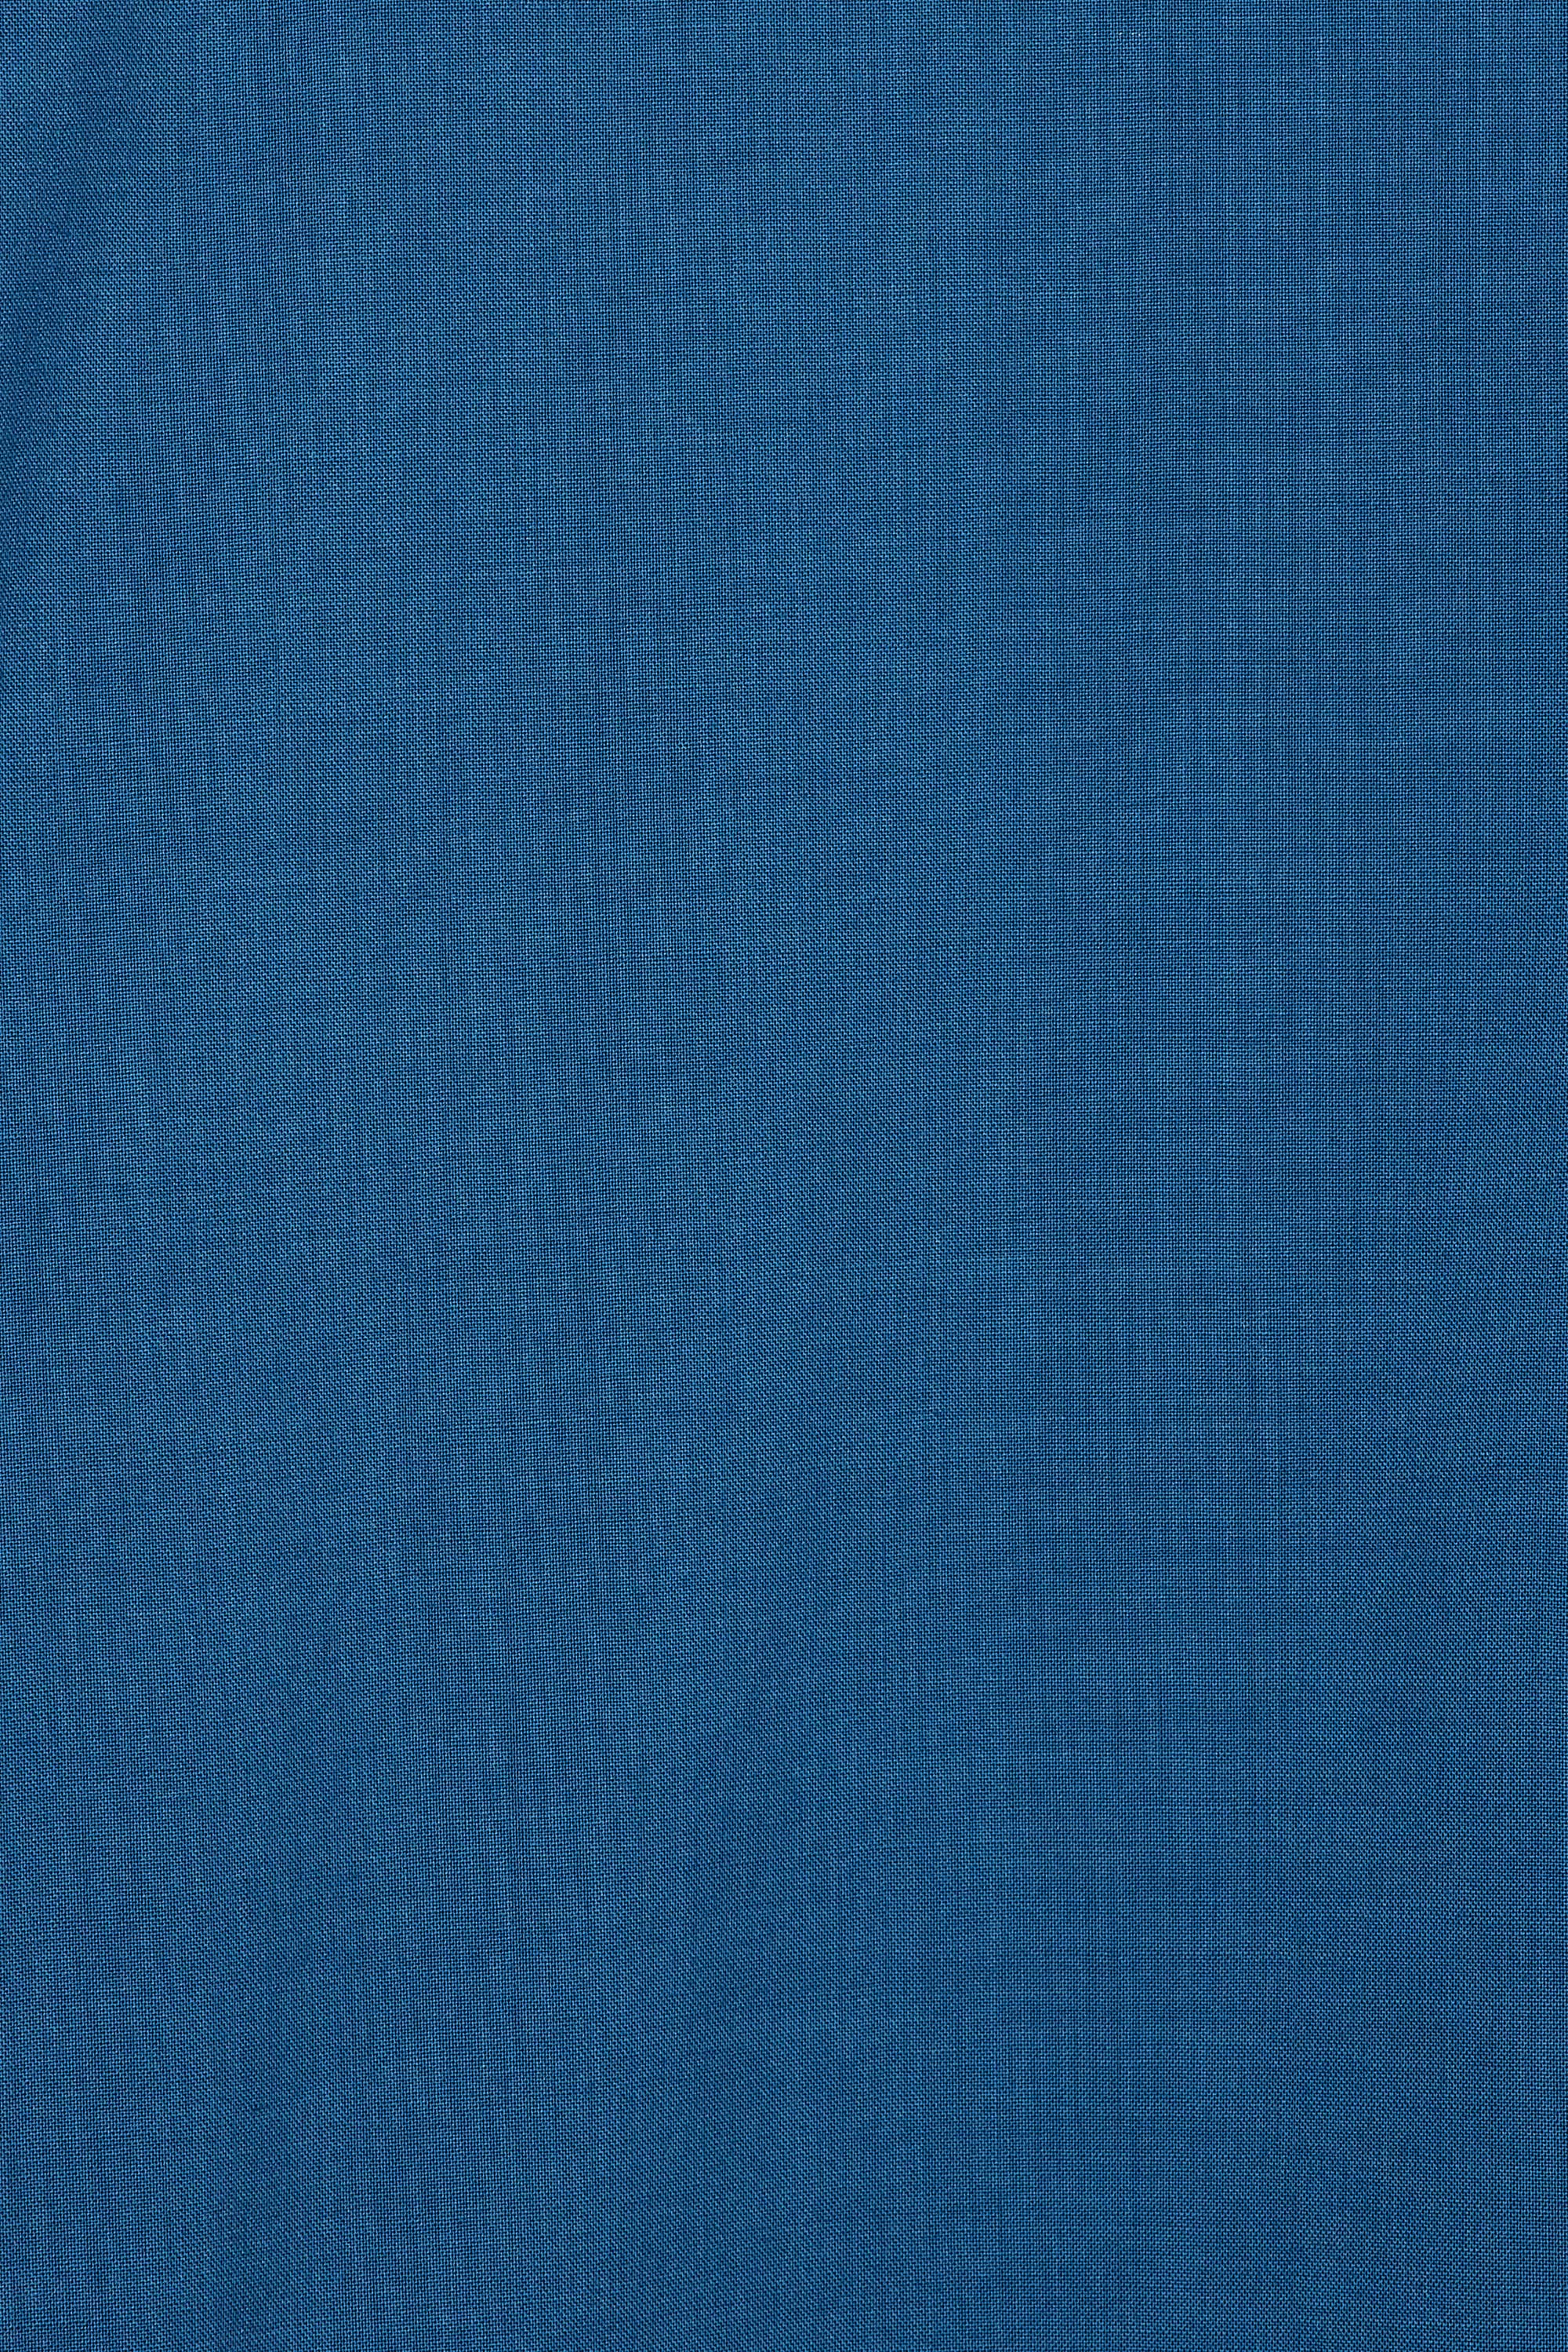 オーガニックウール 2/80 トロピカル / オールインワン S/S, Blue Gray